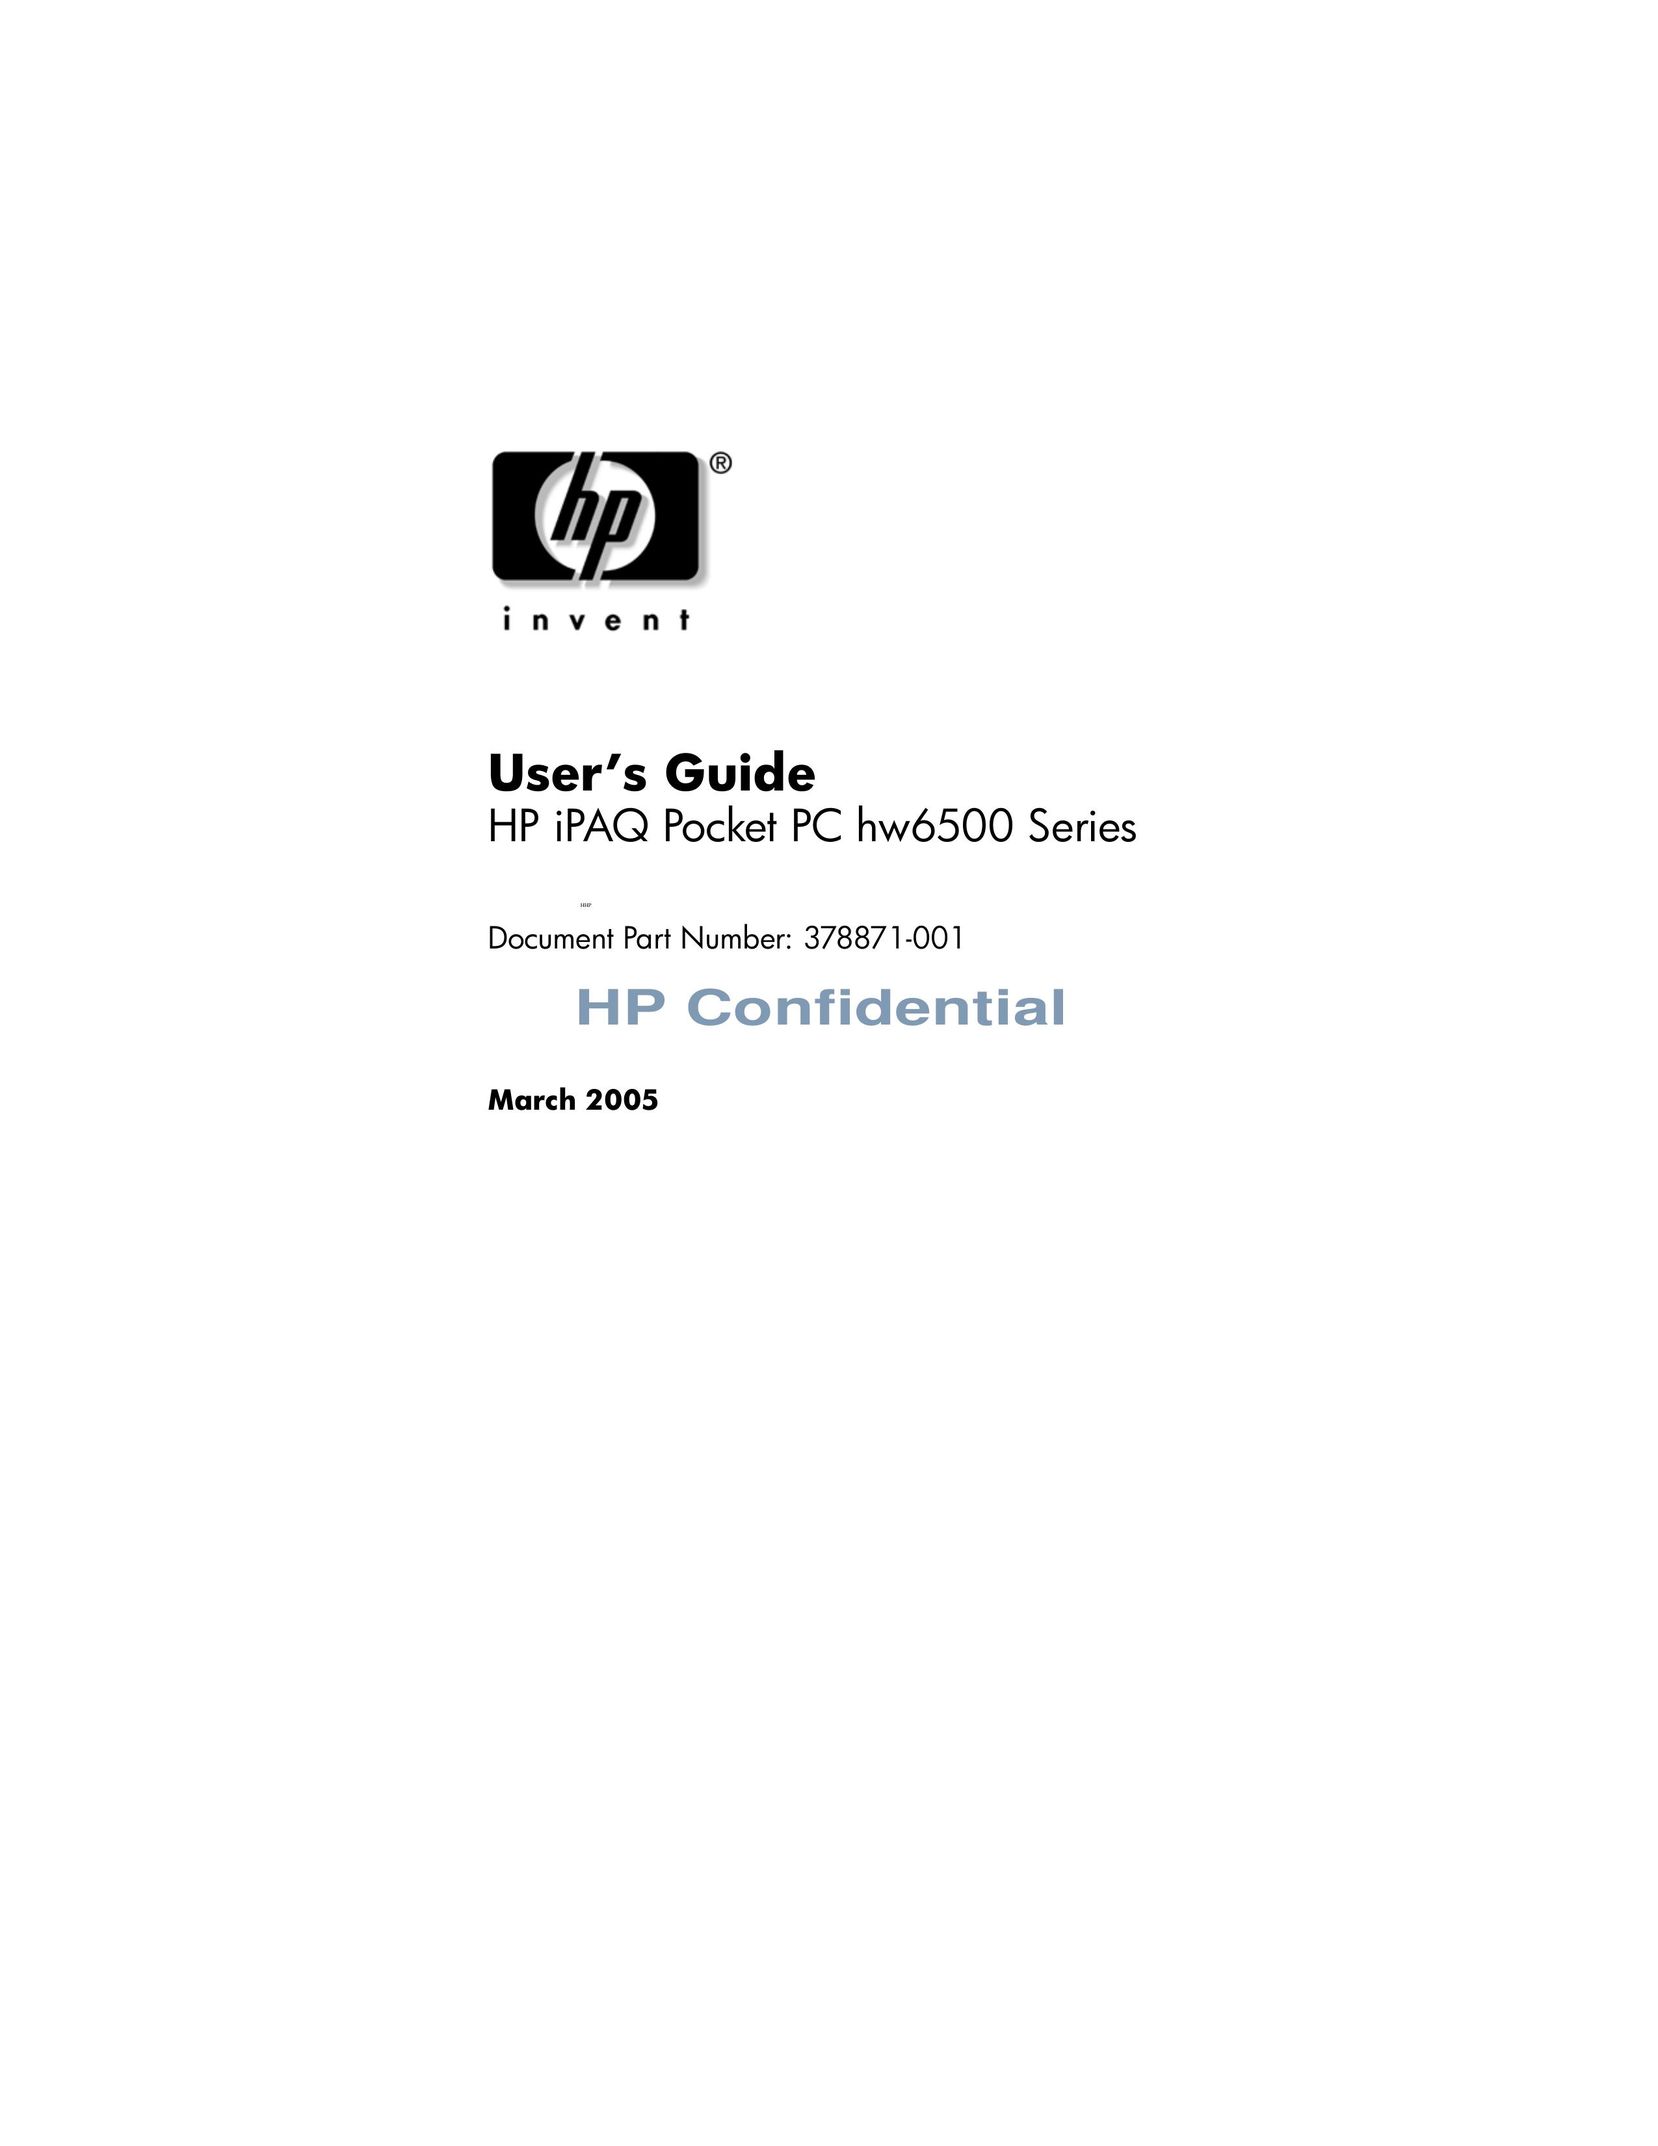 HP (Hewlett-Packard) 6500 Series PDAs & Smartphones User Manual